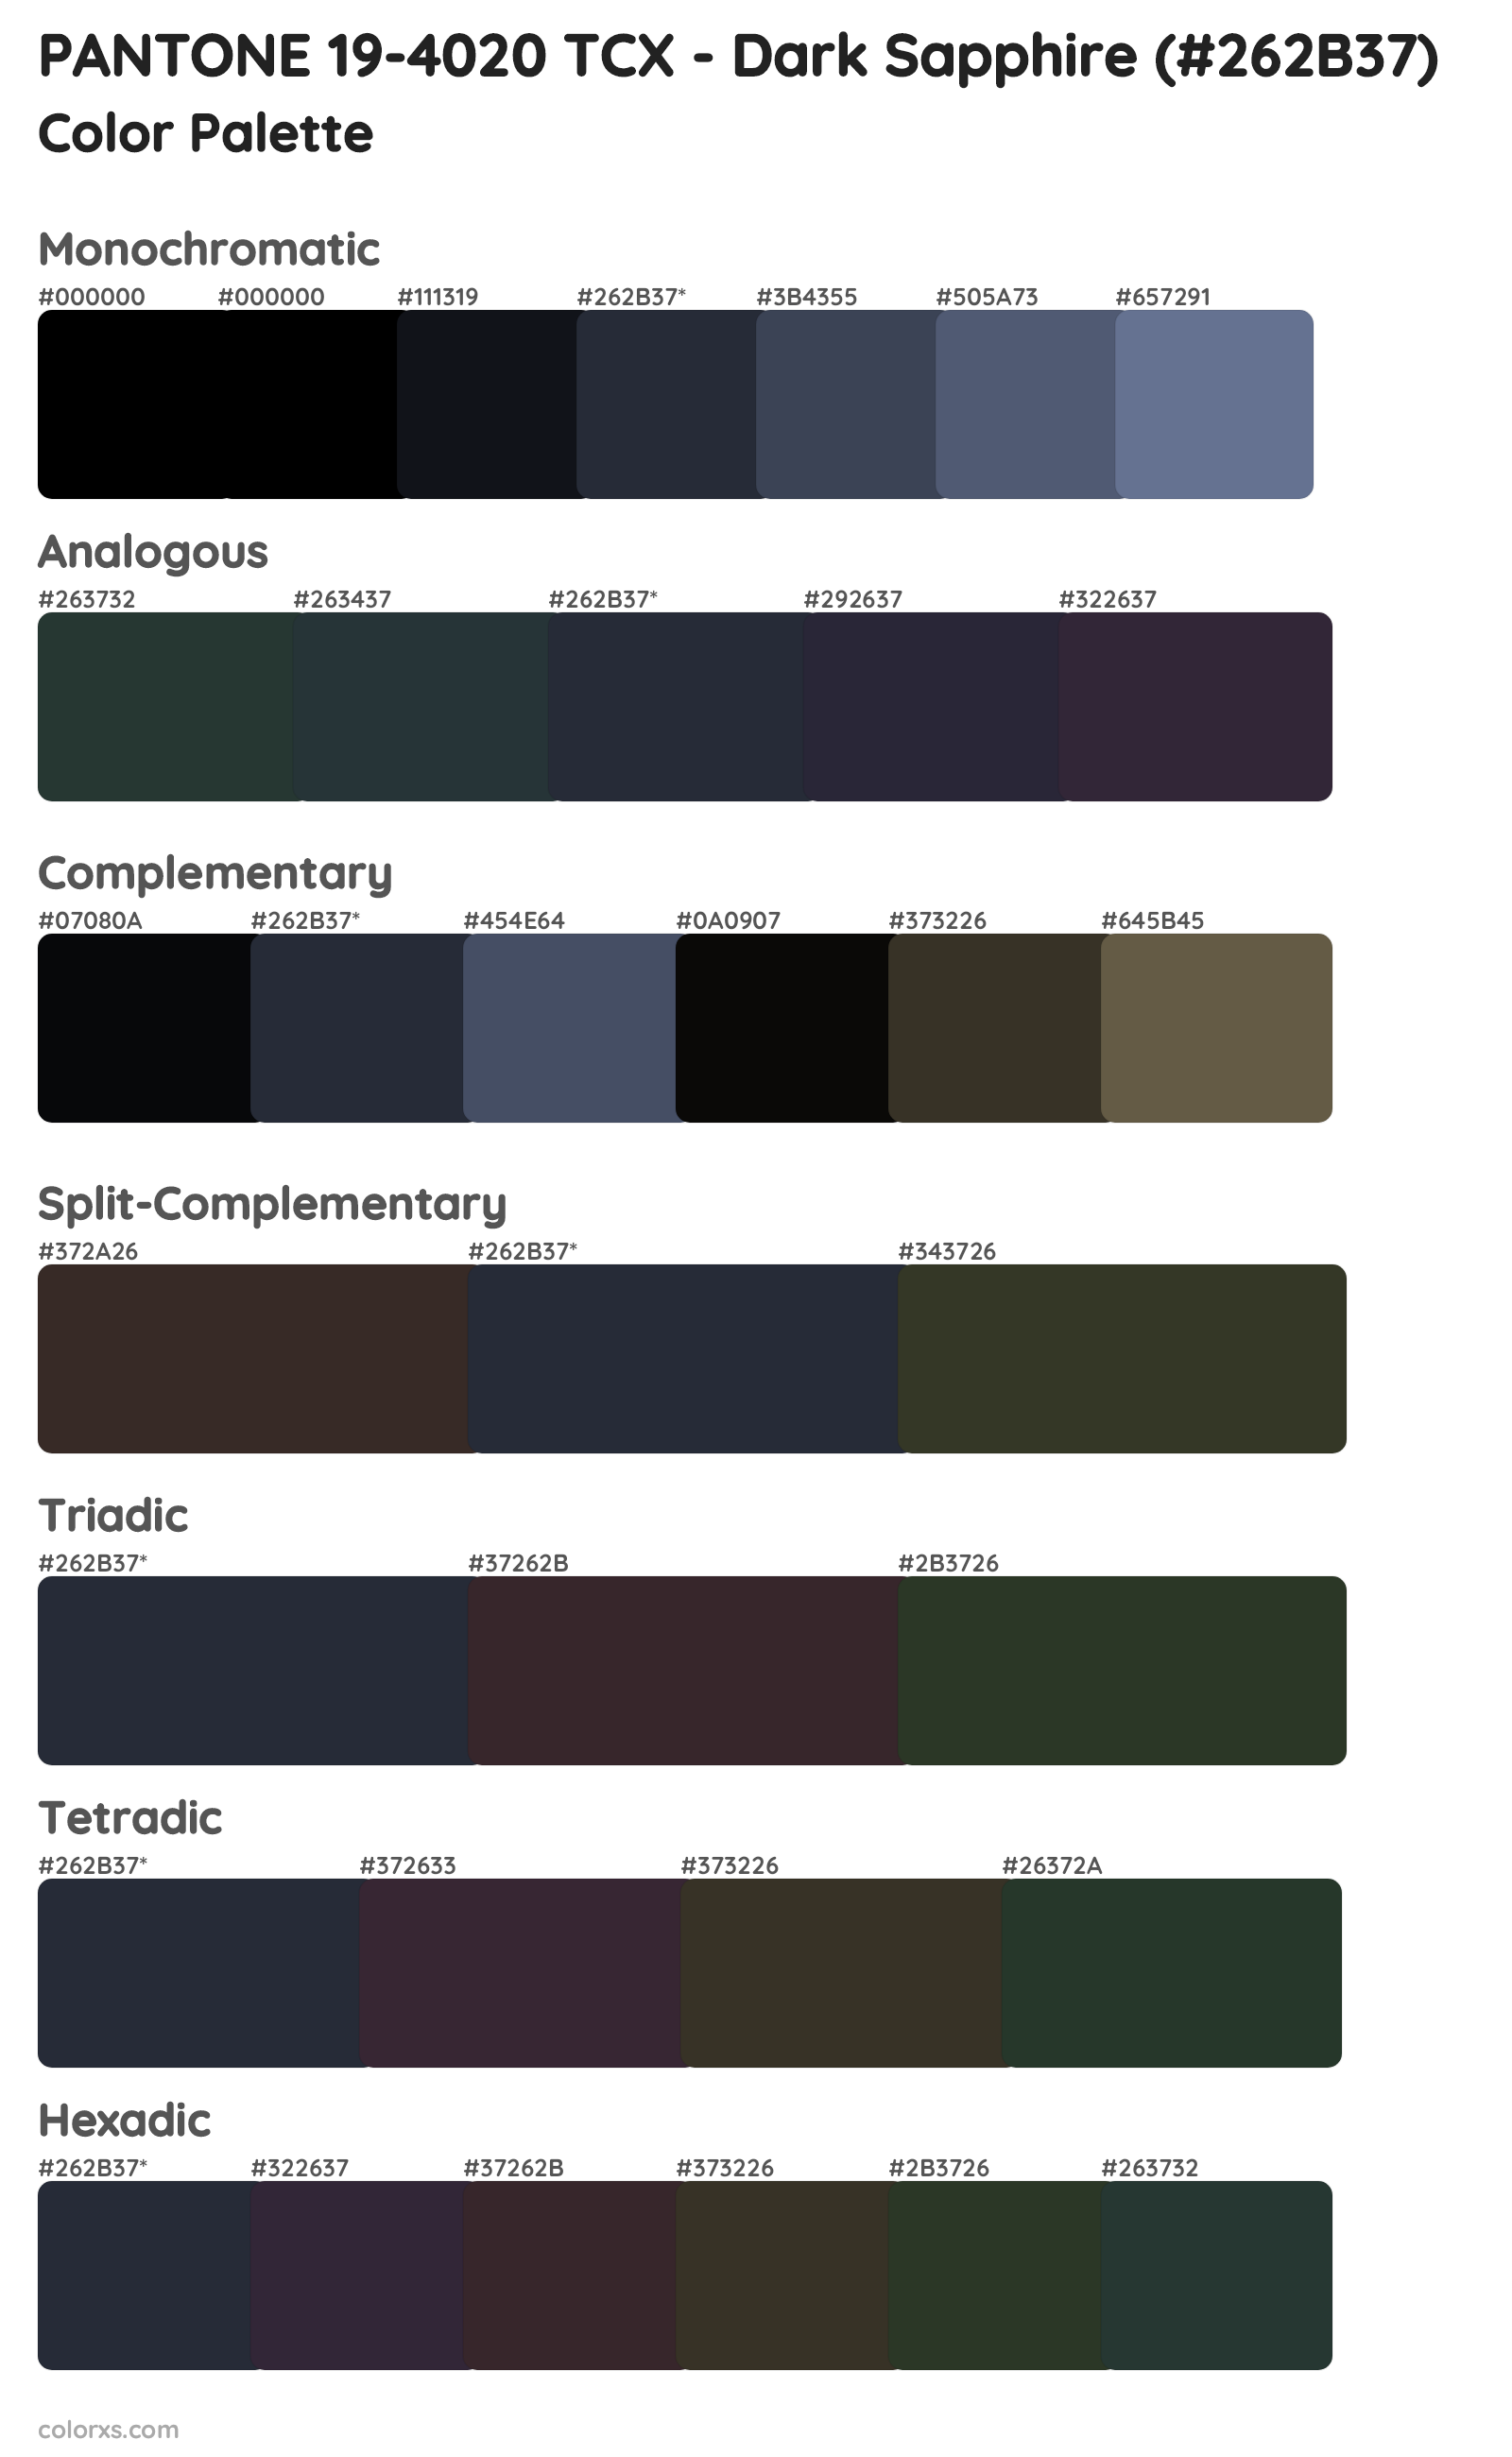 PANTONE 19-4020 TCX - Dark Sapphire Color Scheme Palettes